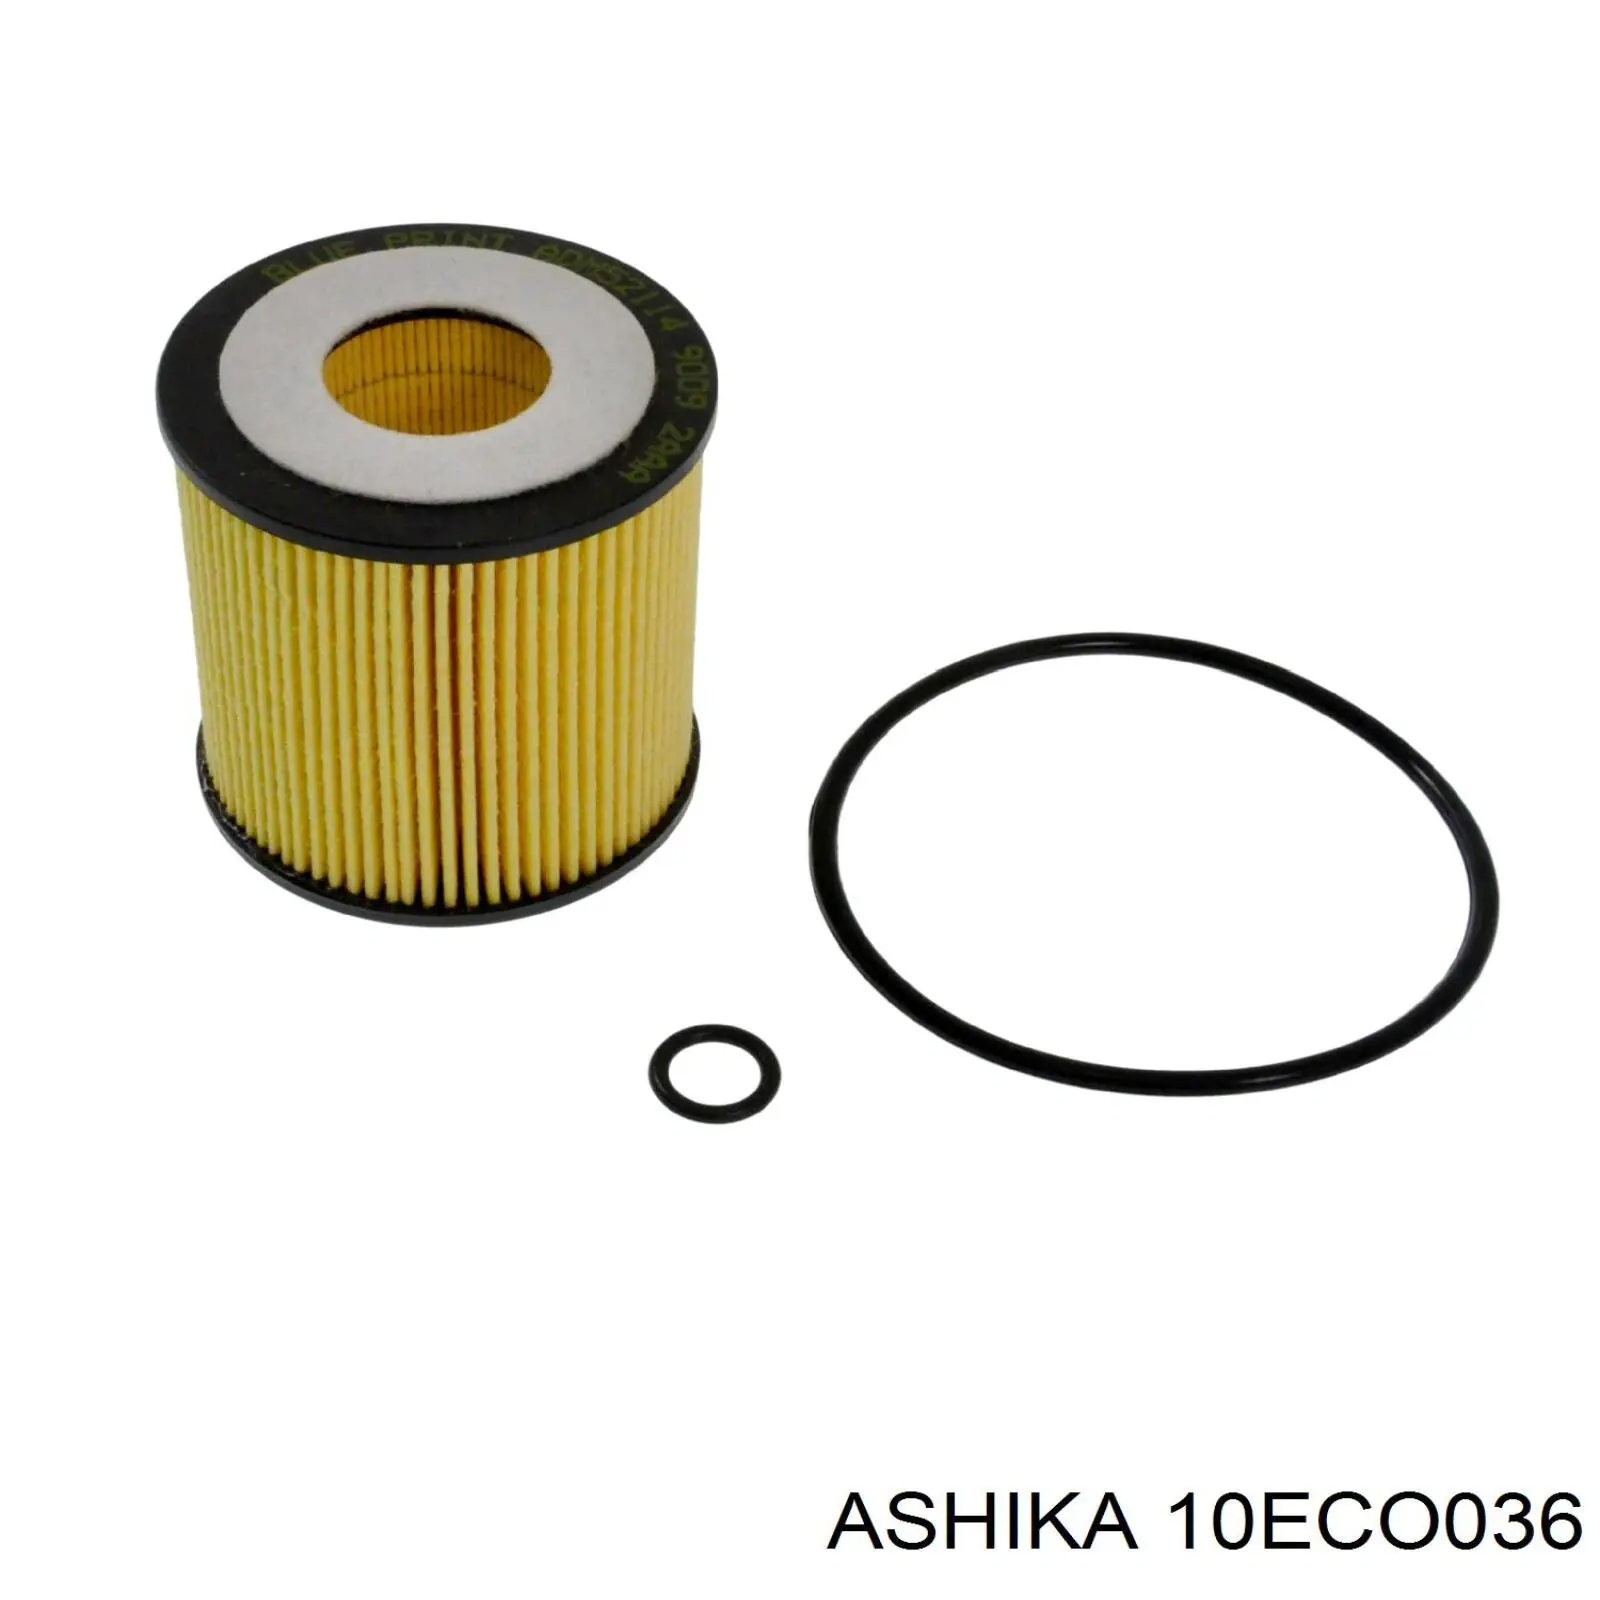 10-ECO036 Ashika filtro de aceite